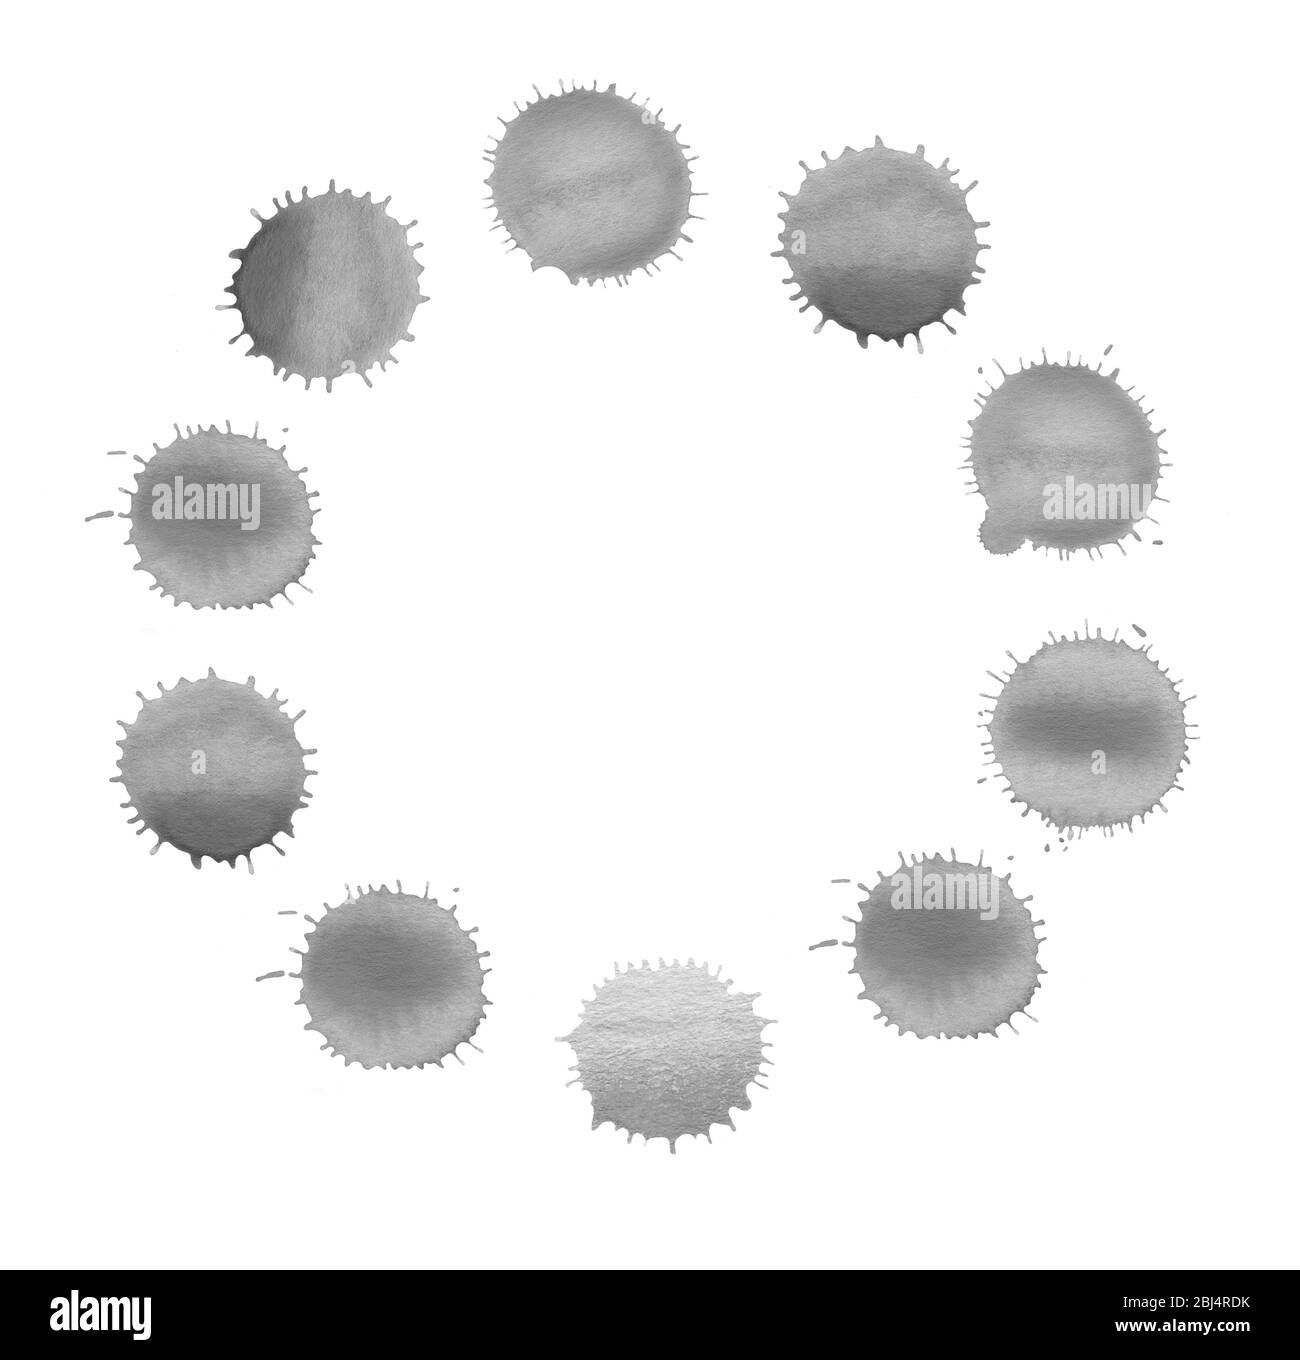 Schwarzes abstraktes Designelement. Flecken und Tropfen Rahmen isoliert auf weißem Hintergrund. Abstrakter handgezeichneter Kreis mit Punkten. Stockfoto